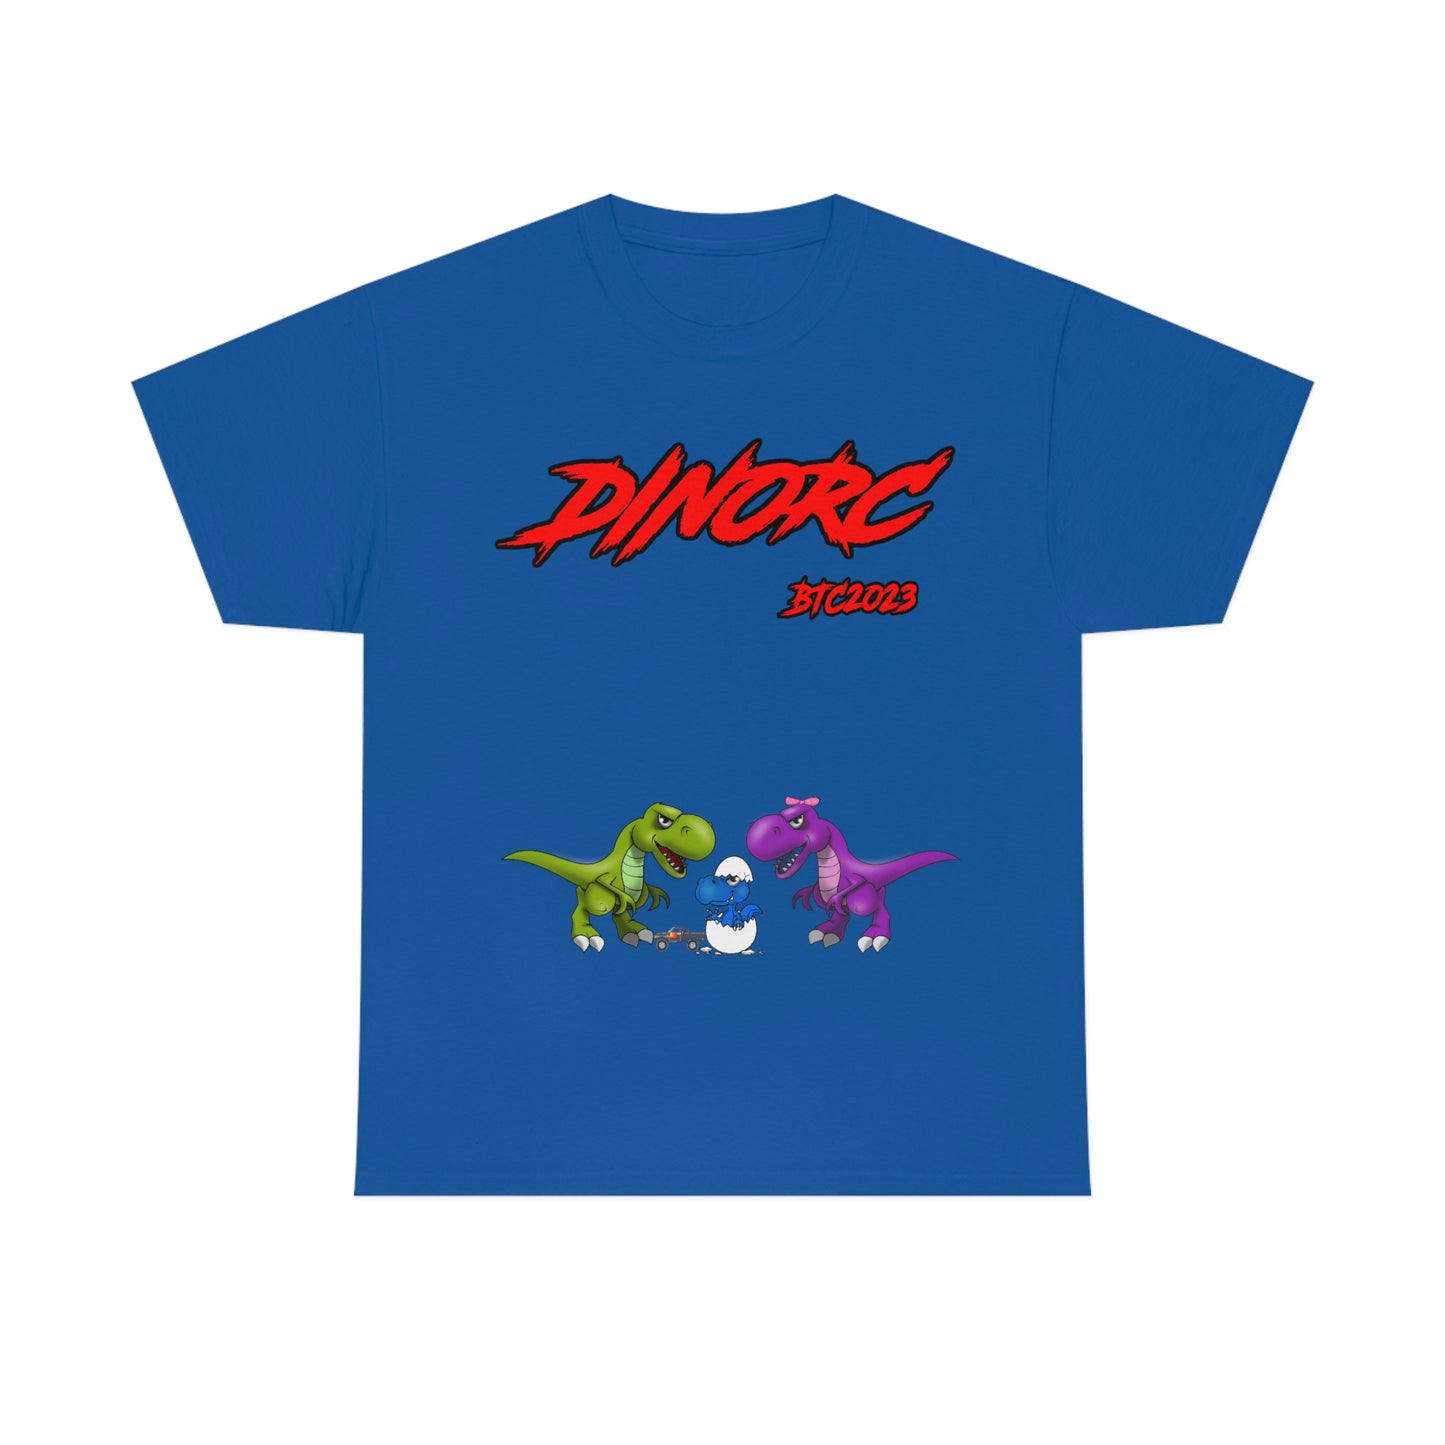 Front BTC DinoRc Logo T-Shirt S-5x 5 colors